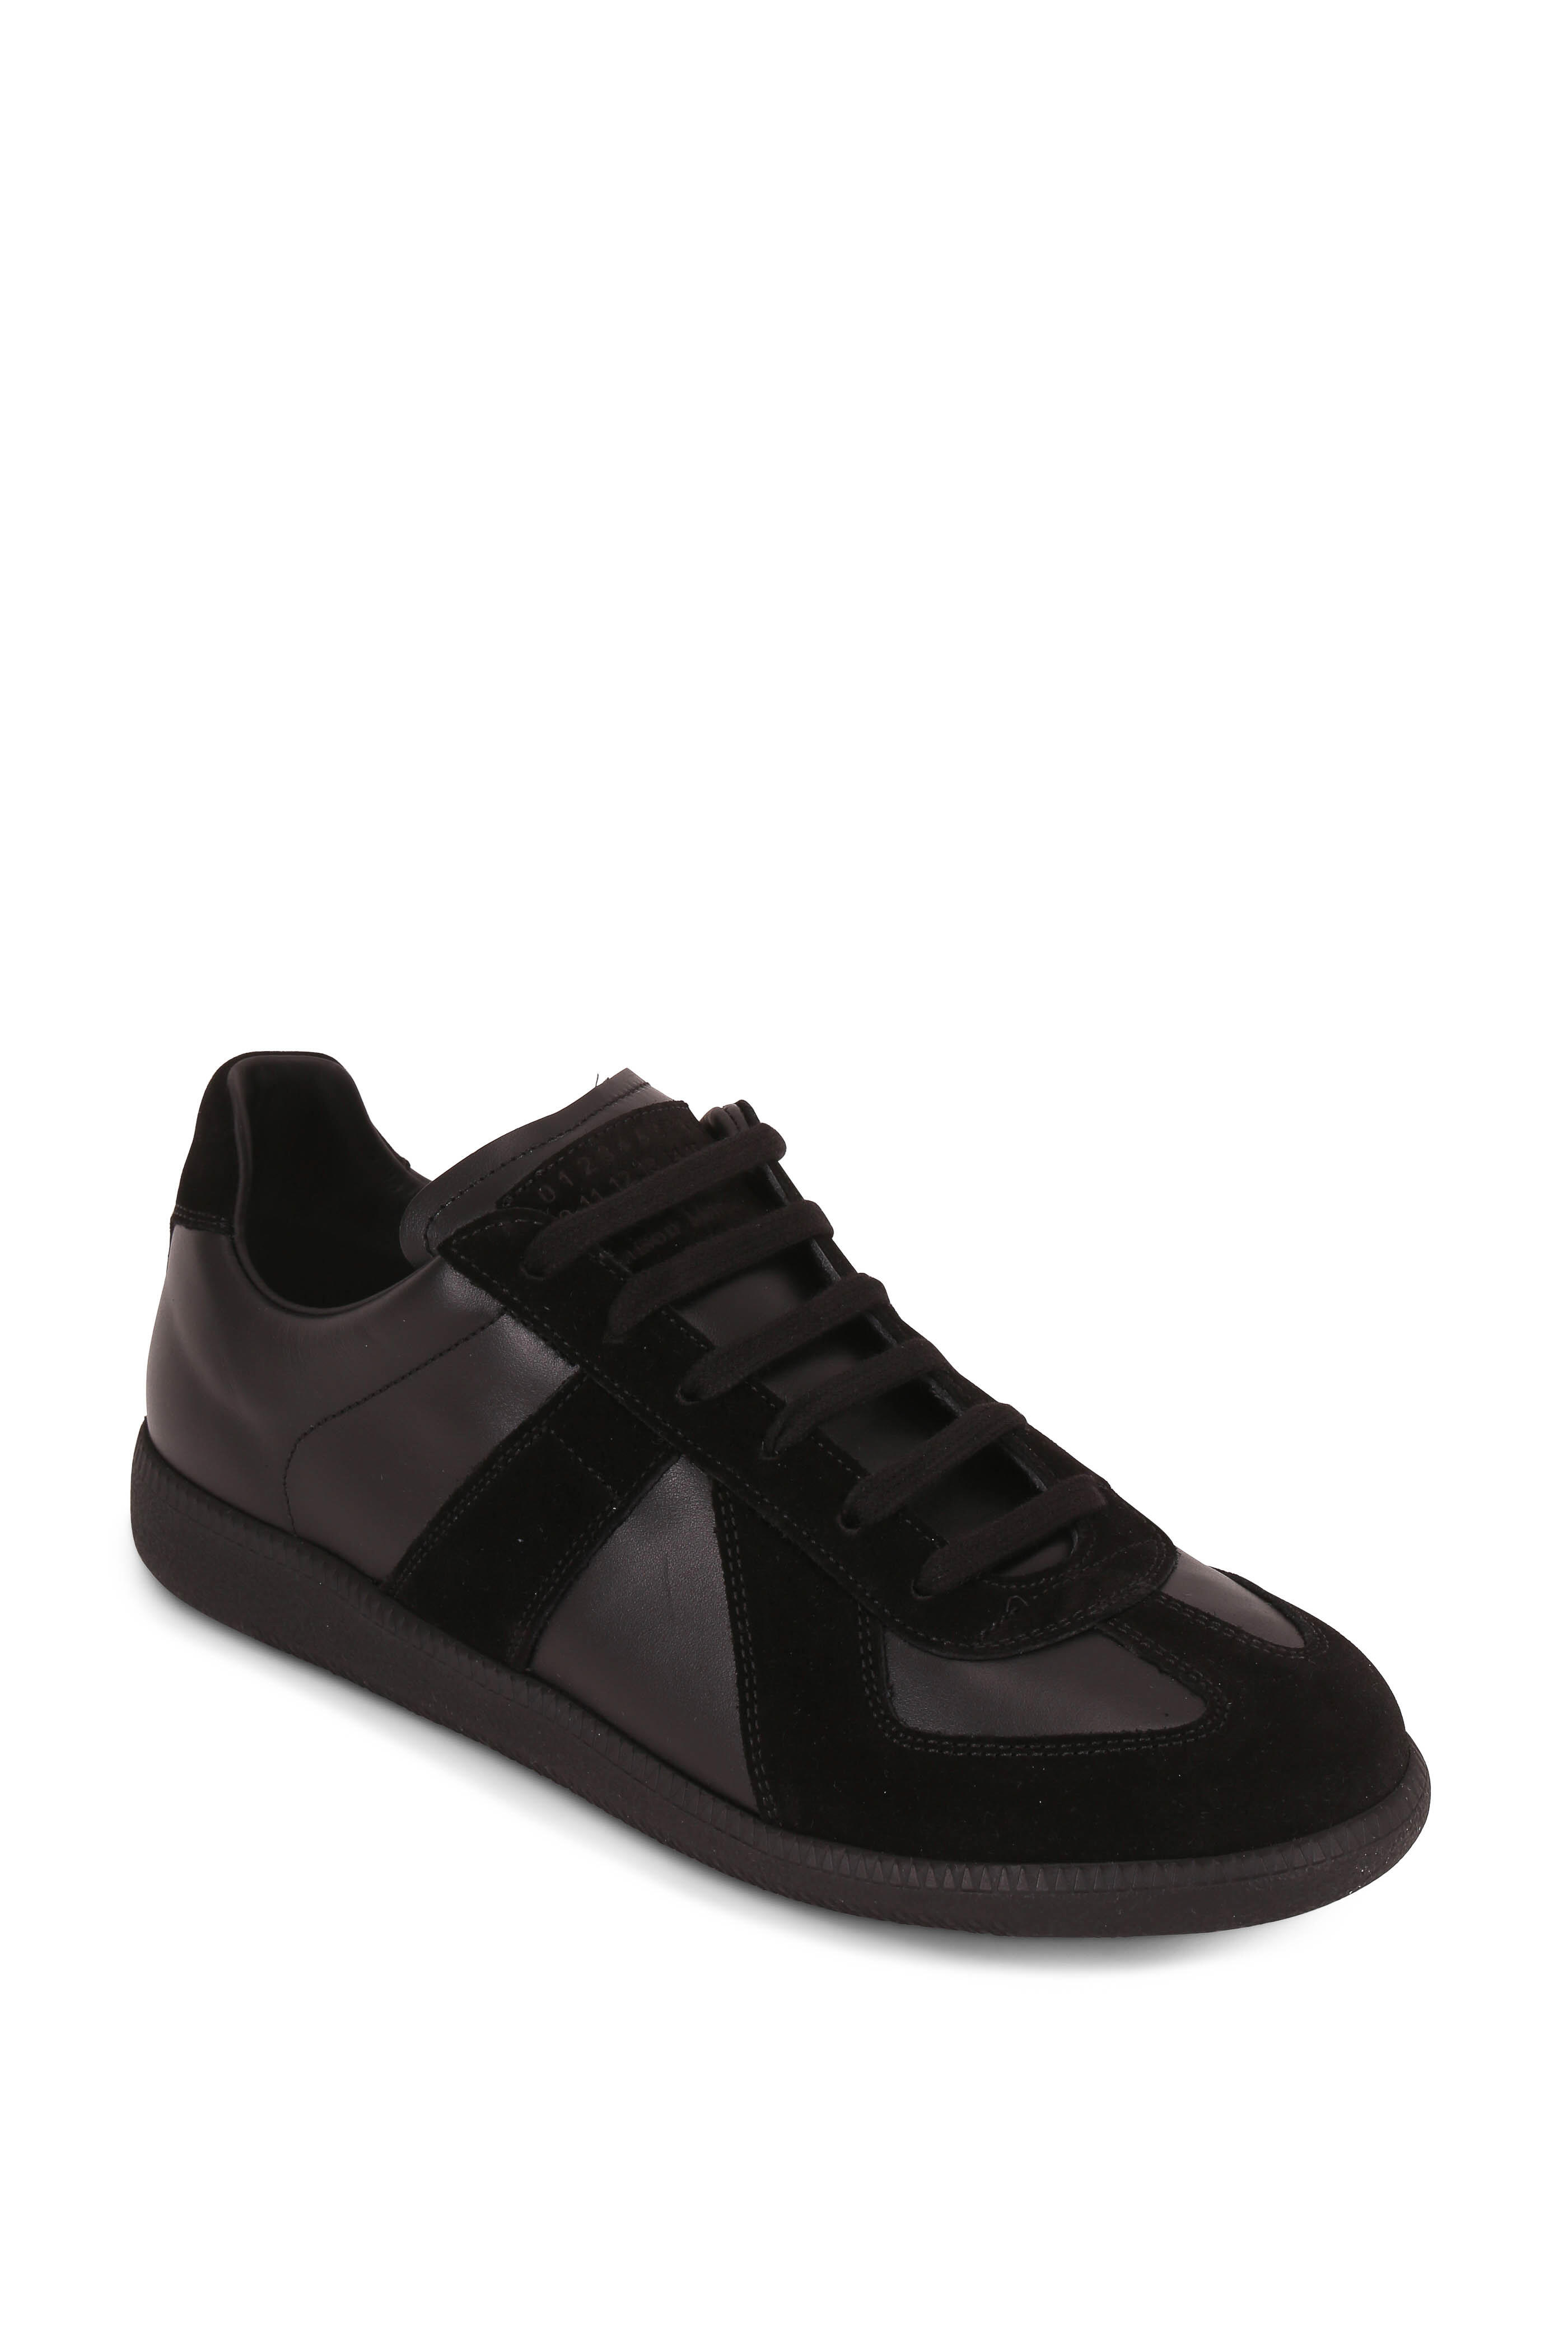 Kirken Aske Seraph Maison Margiela - Replica Black Leather & Suede Low Top Sneaker